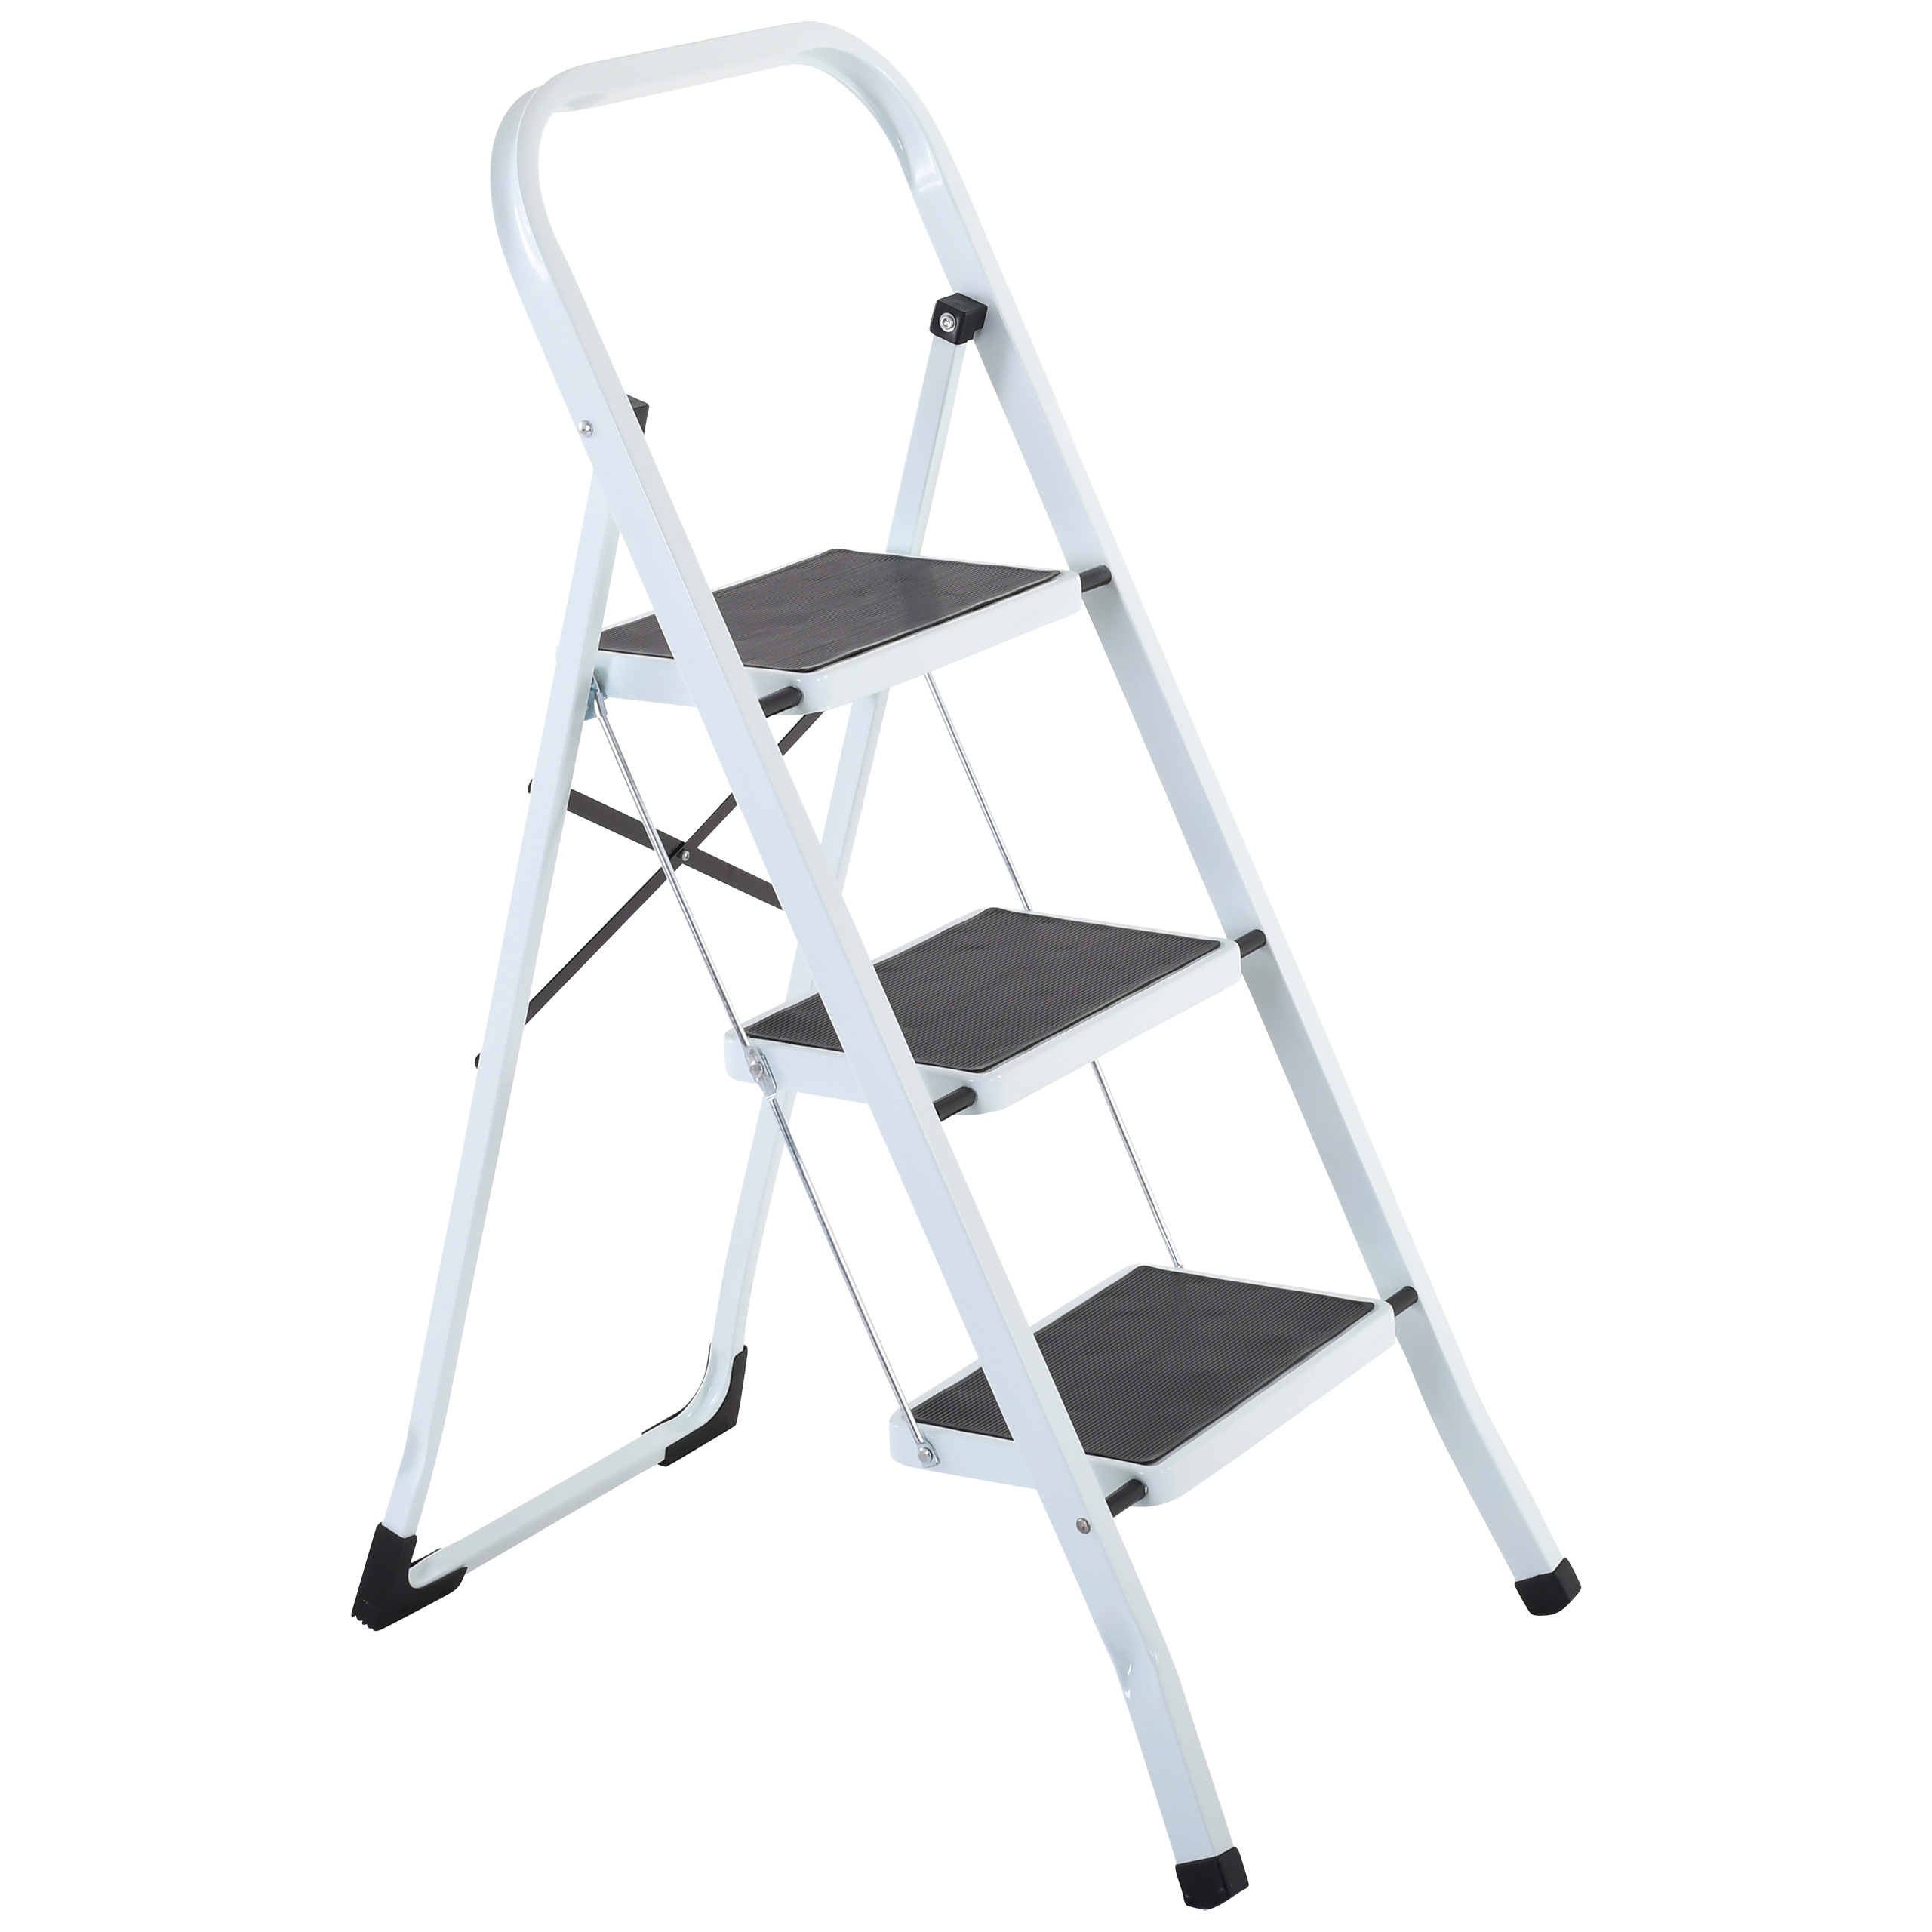 Raburg Stahl-Klapptritt-Leiter Step Medium, 3 Stufen, Stahl in Weiß, kompakt klappbar - 67,5 cm hoch